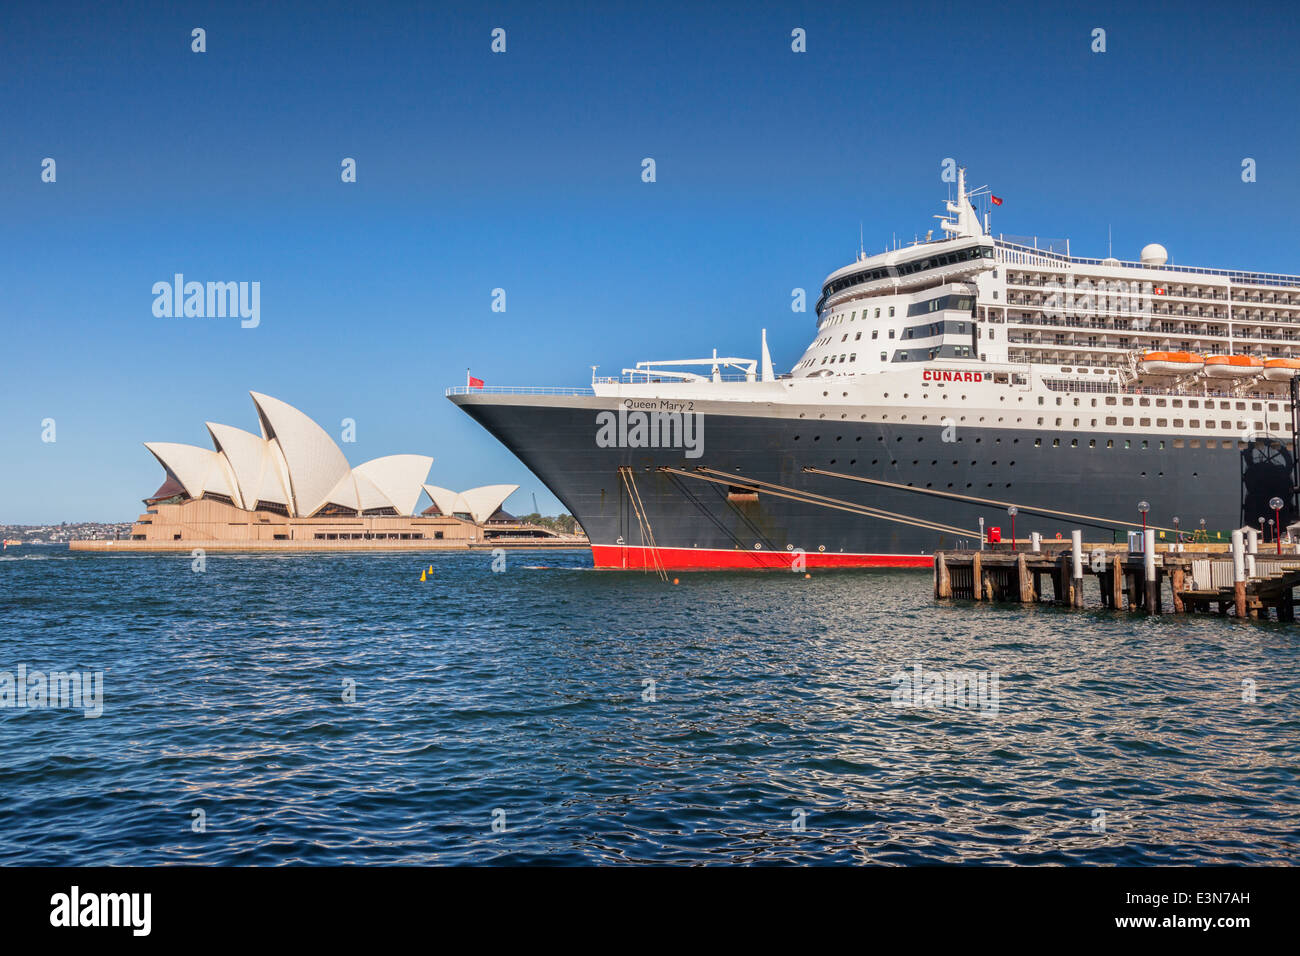 Queen Mary 2 de Cunard Liner accostera au Circular Quay, Sydney, avec l'Opéra de Sydney dans l'arrière-plan. Banque D'Images